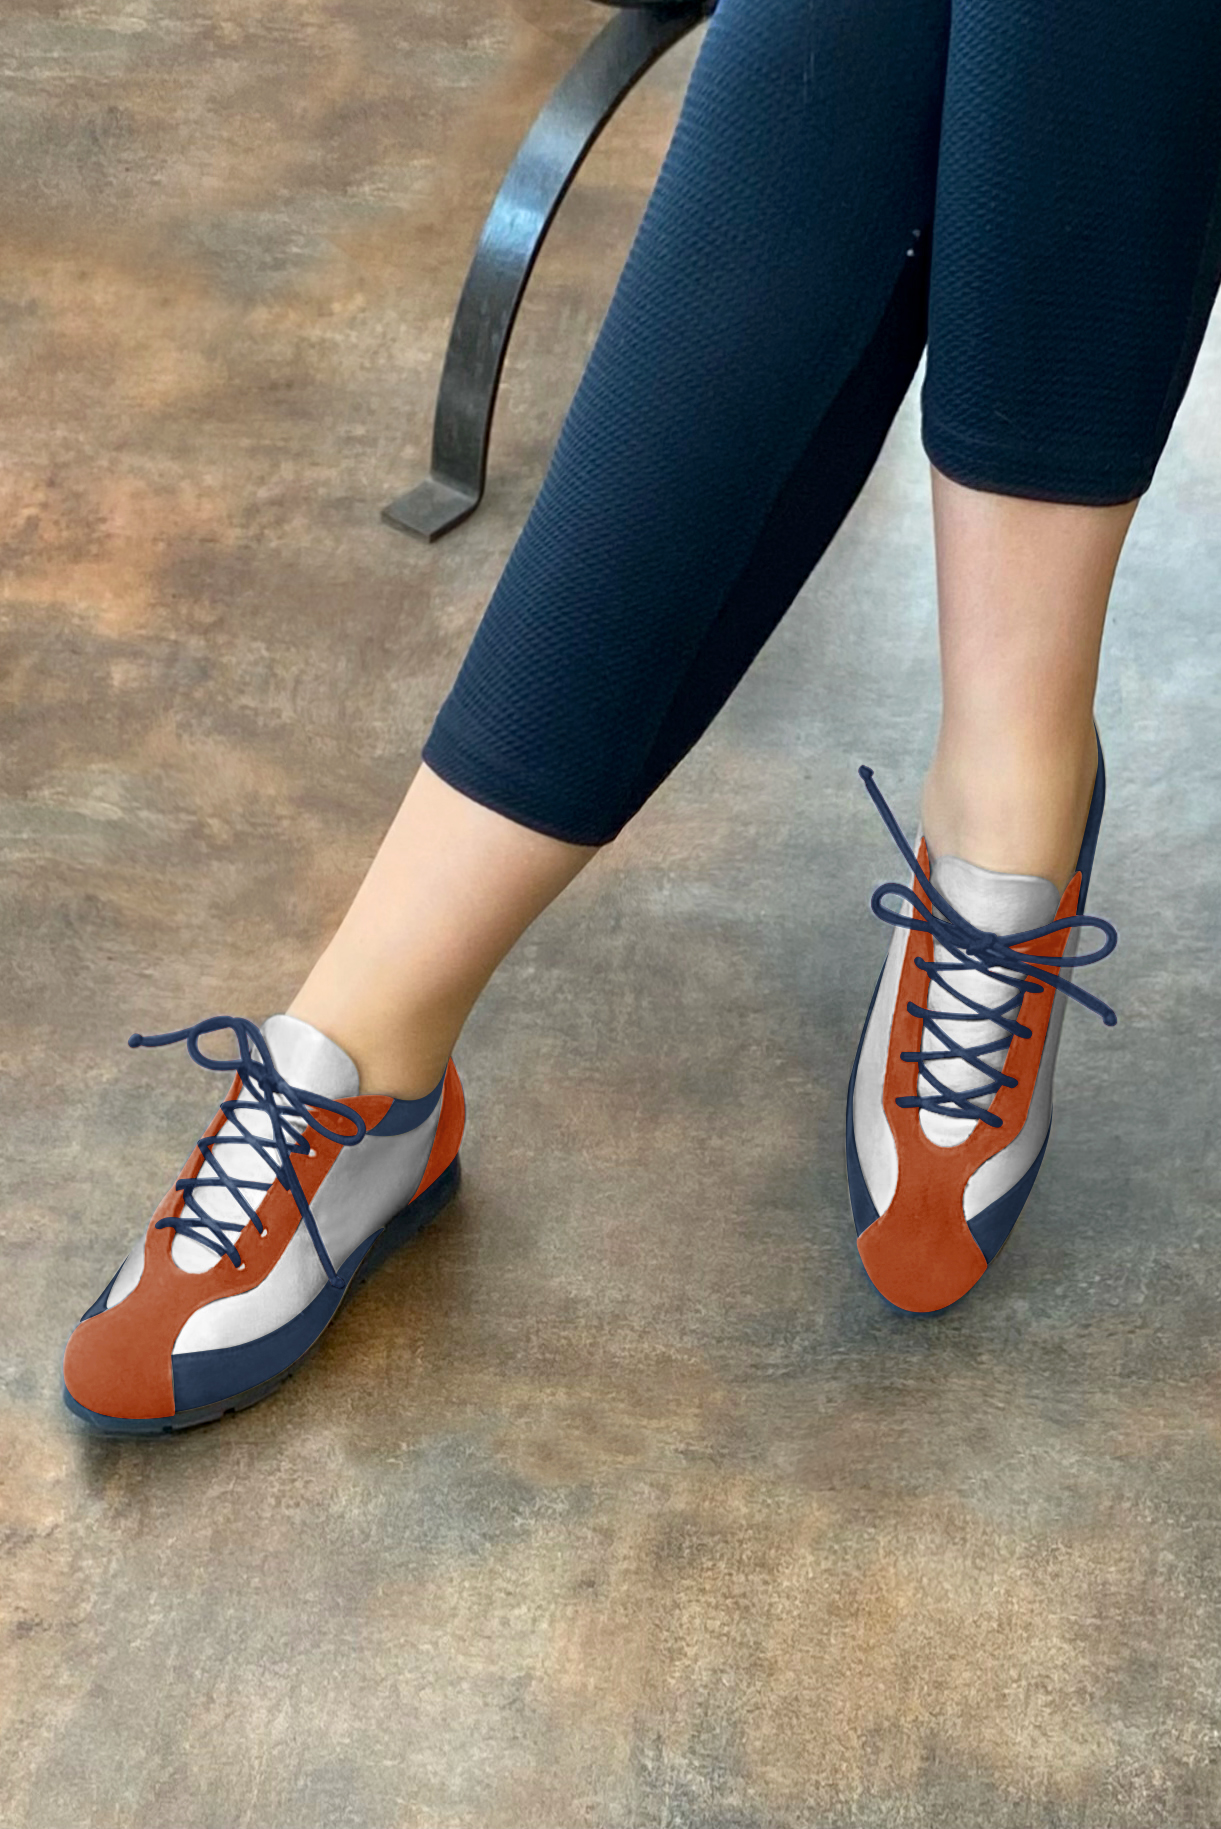 Basket femme habillée :  couleur orange corail, argent platine et bleu marine. Semelle fine. Doublure cuir. Vue porté - Florence KOOIJMAN